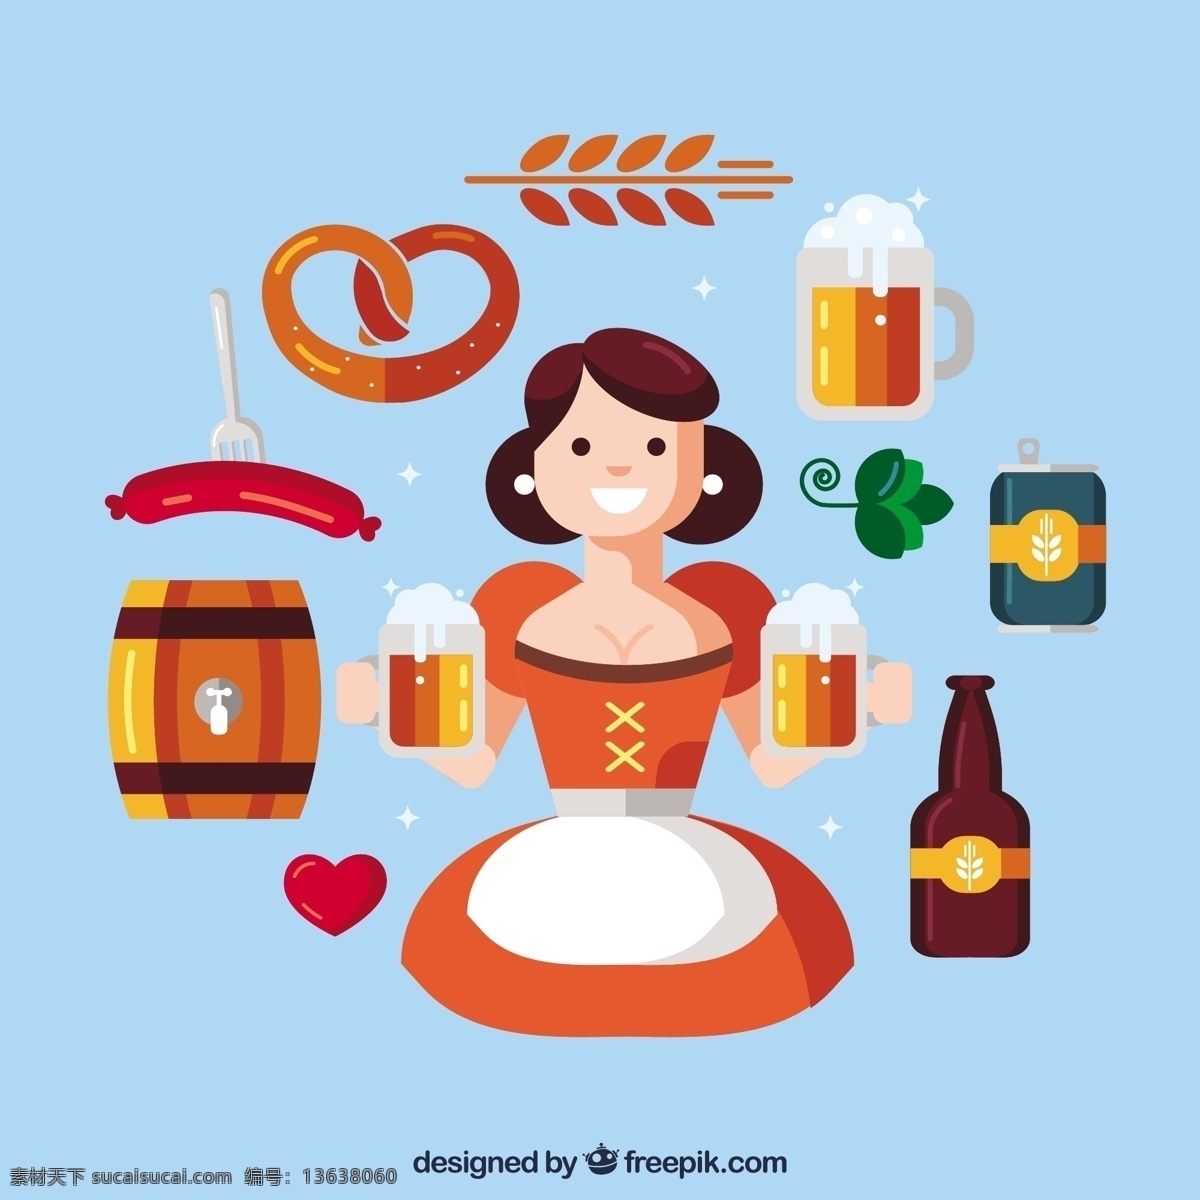 微笑 女人 啤酒节 元素 派对 啤酒 秋天 树叶 庆祝 快乐 多彩 节日 瓶 扁 酒吧 小麦 玻璃 饮料 服装 笑脸 平面设计